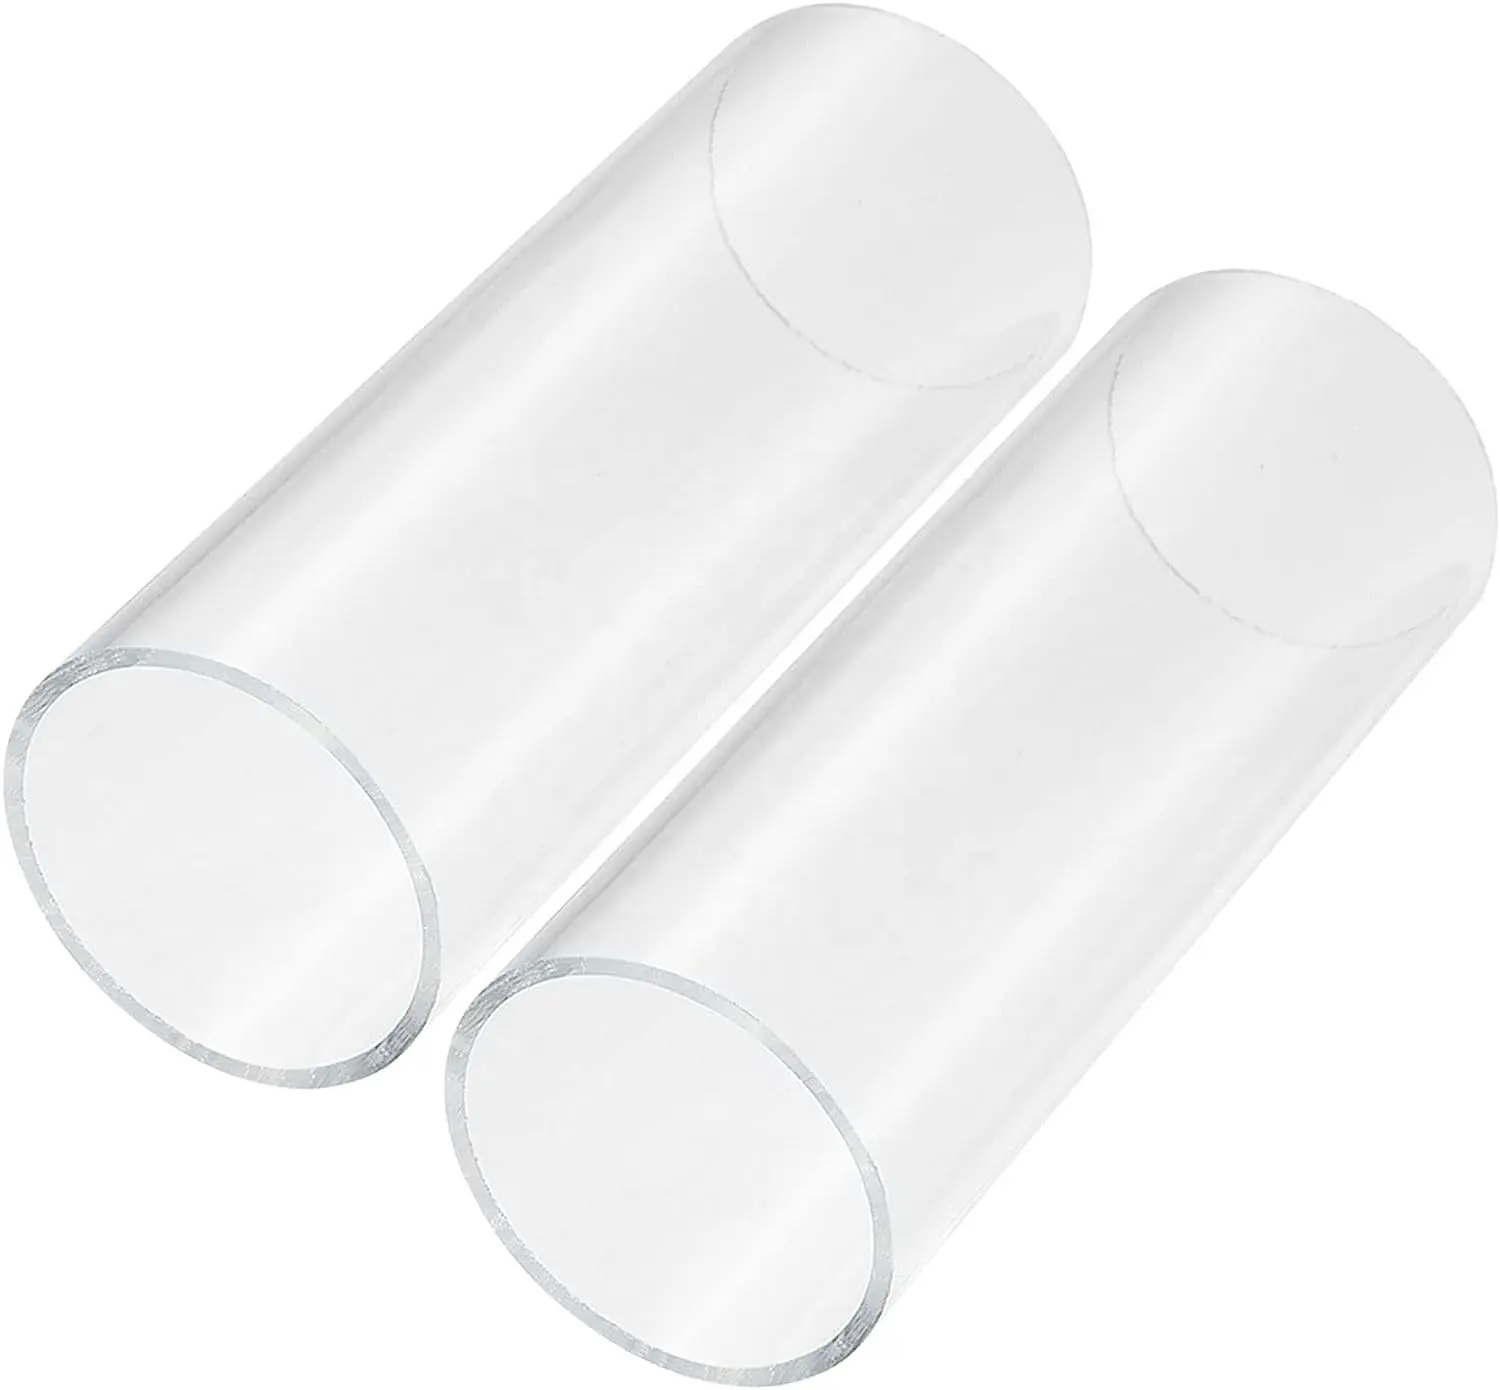 Tubo de policarbonato transparente de alta calidad PVC PC PETG PMMA Tubo acrílico Cilindro de tubo de plástico duro